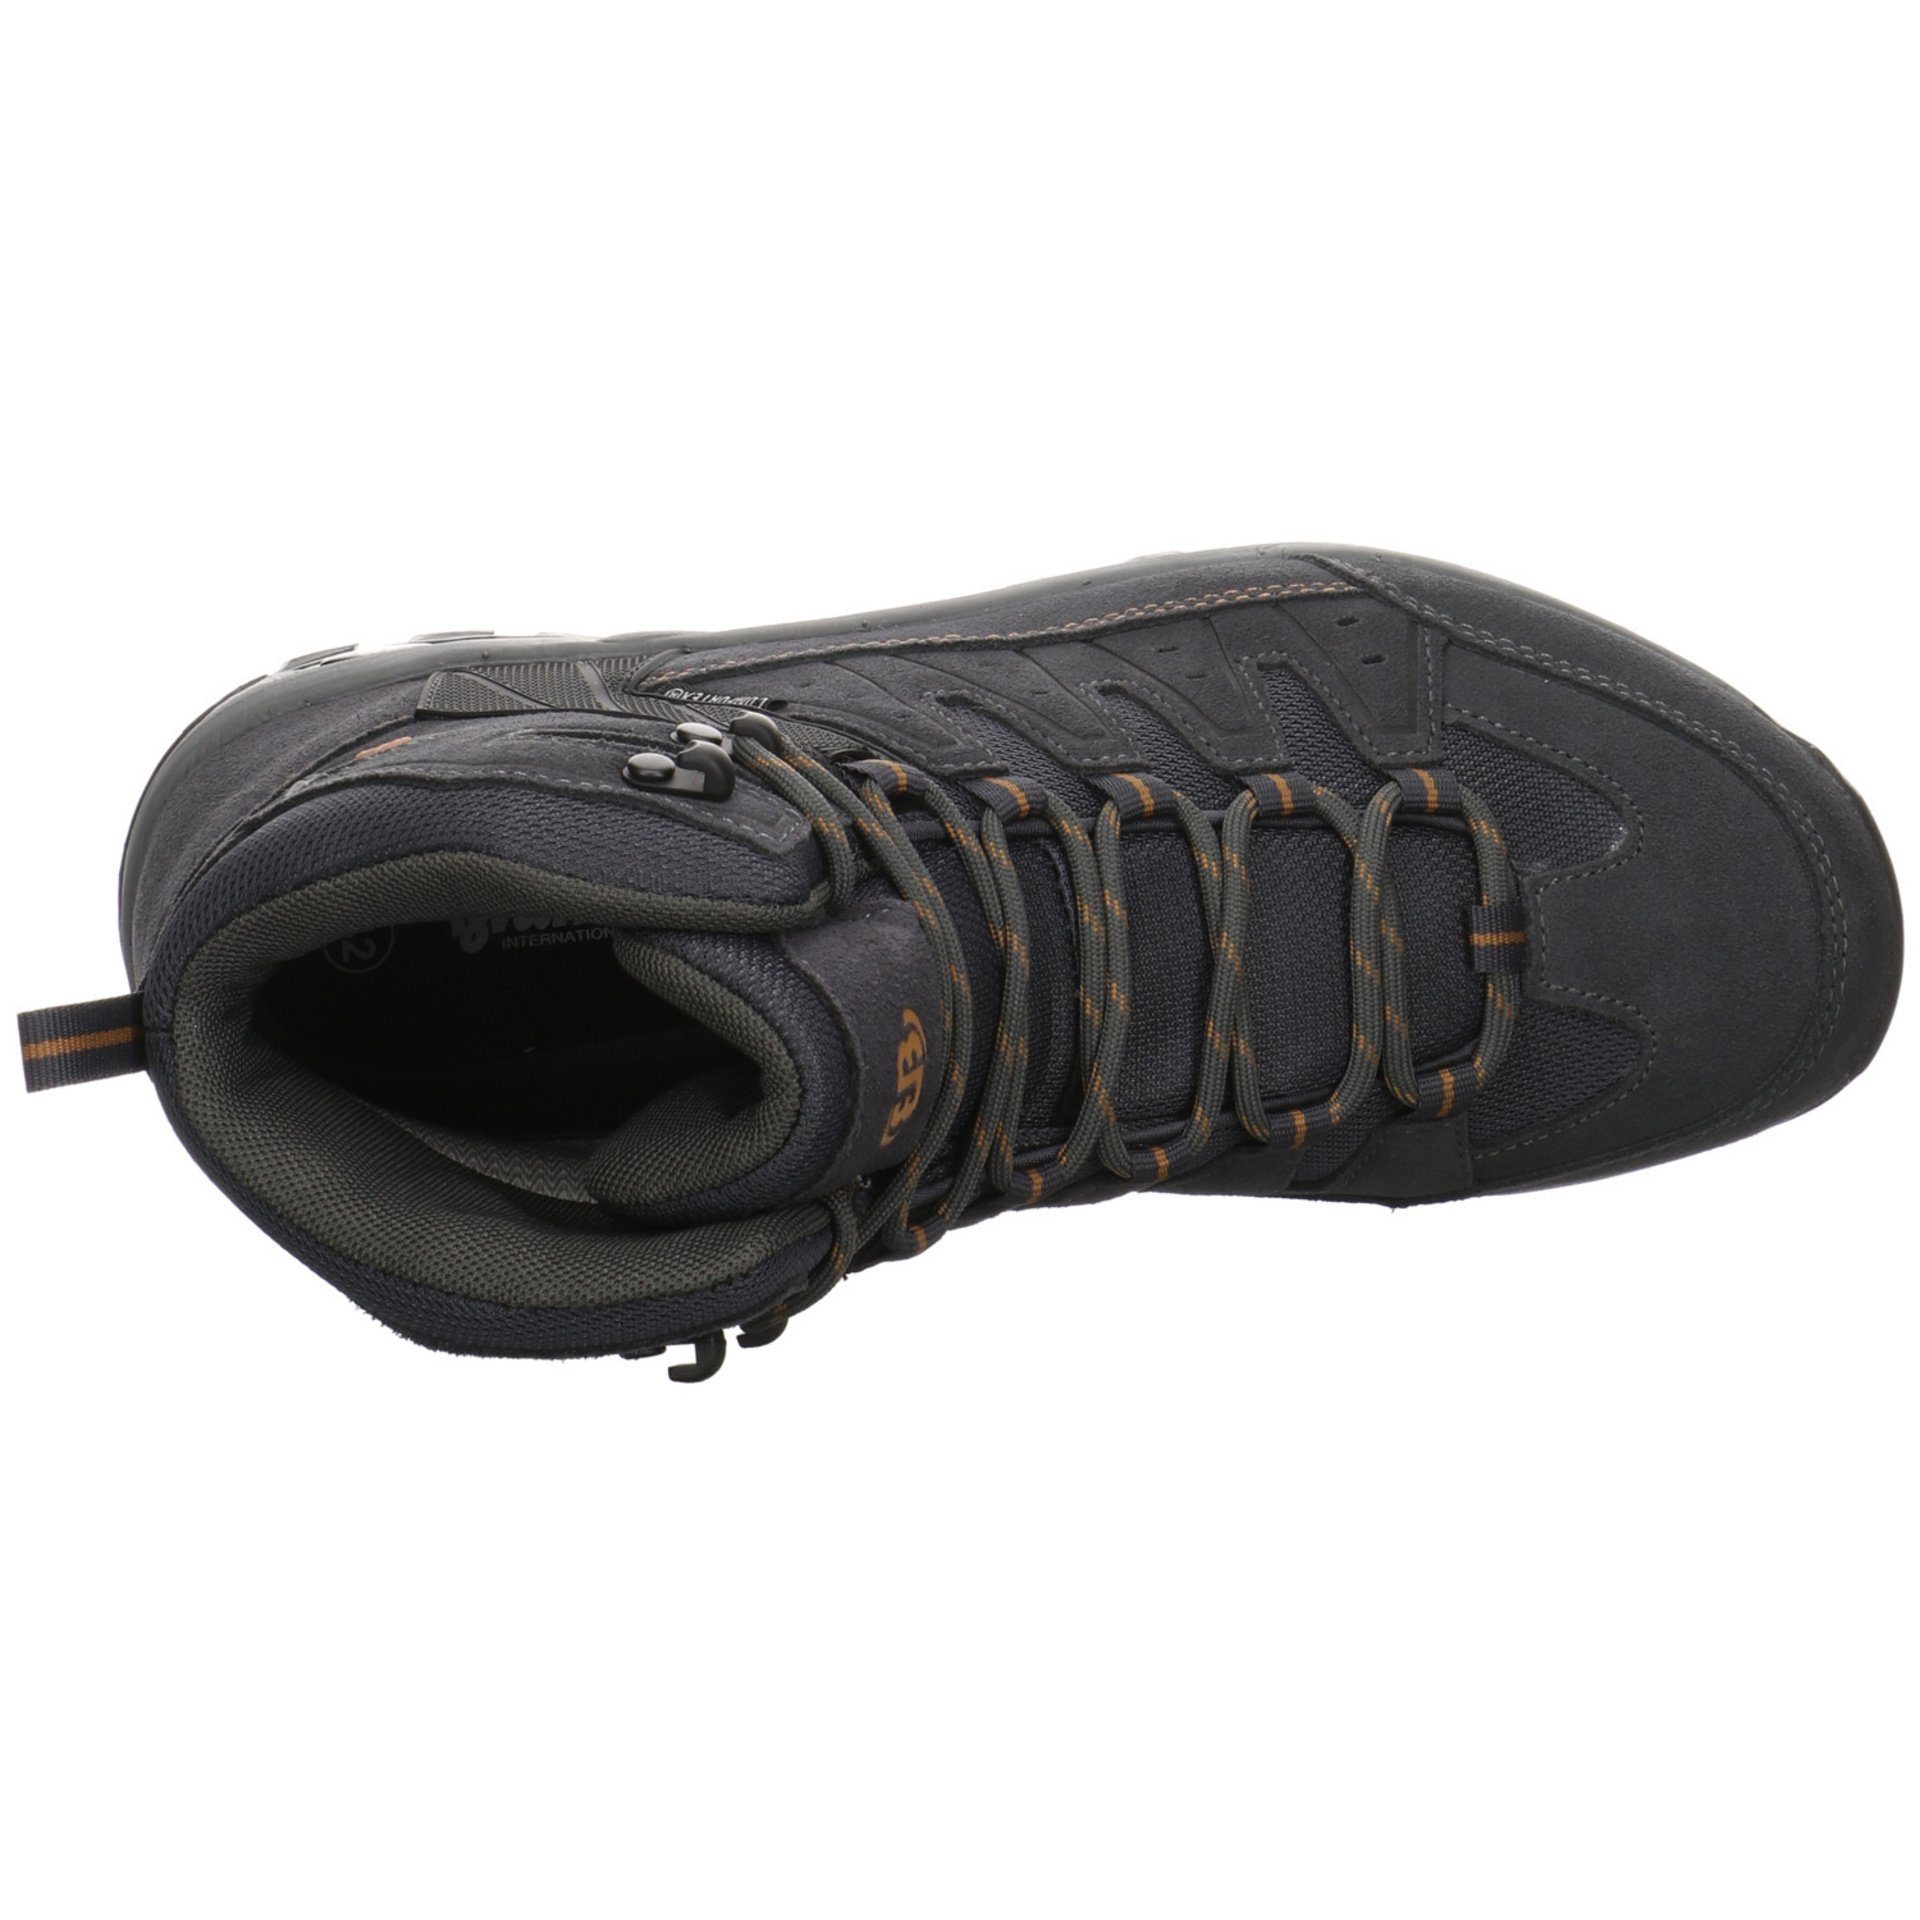 Herren Outdoorschuh Outdoor Leder-/Textilkombination BRÜTTING Schuhe